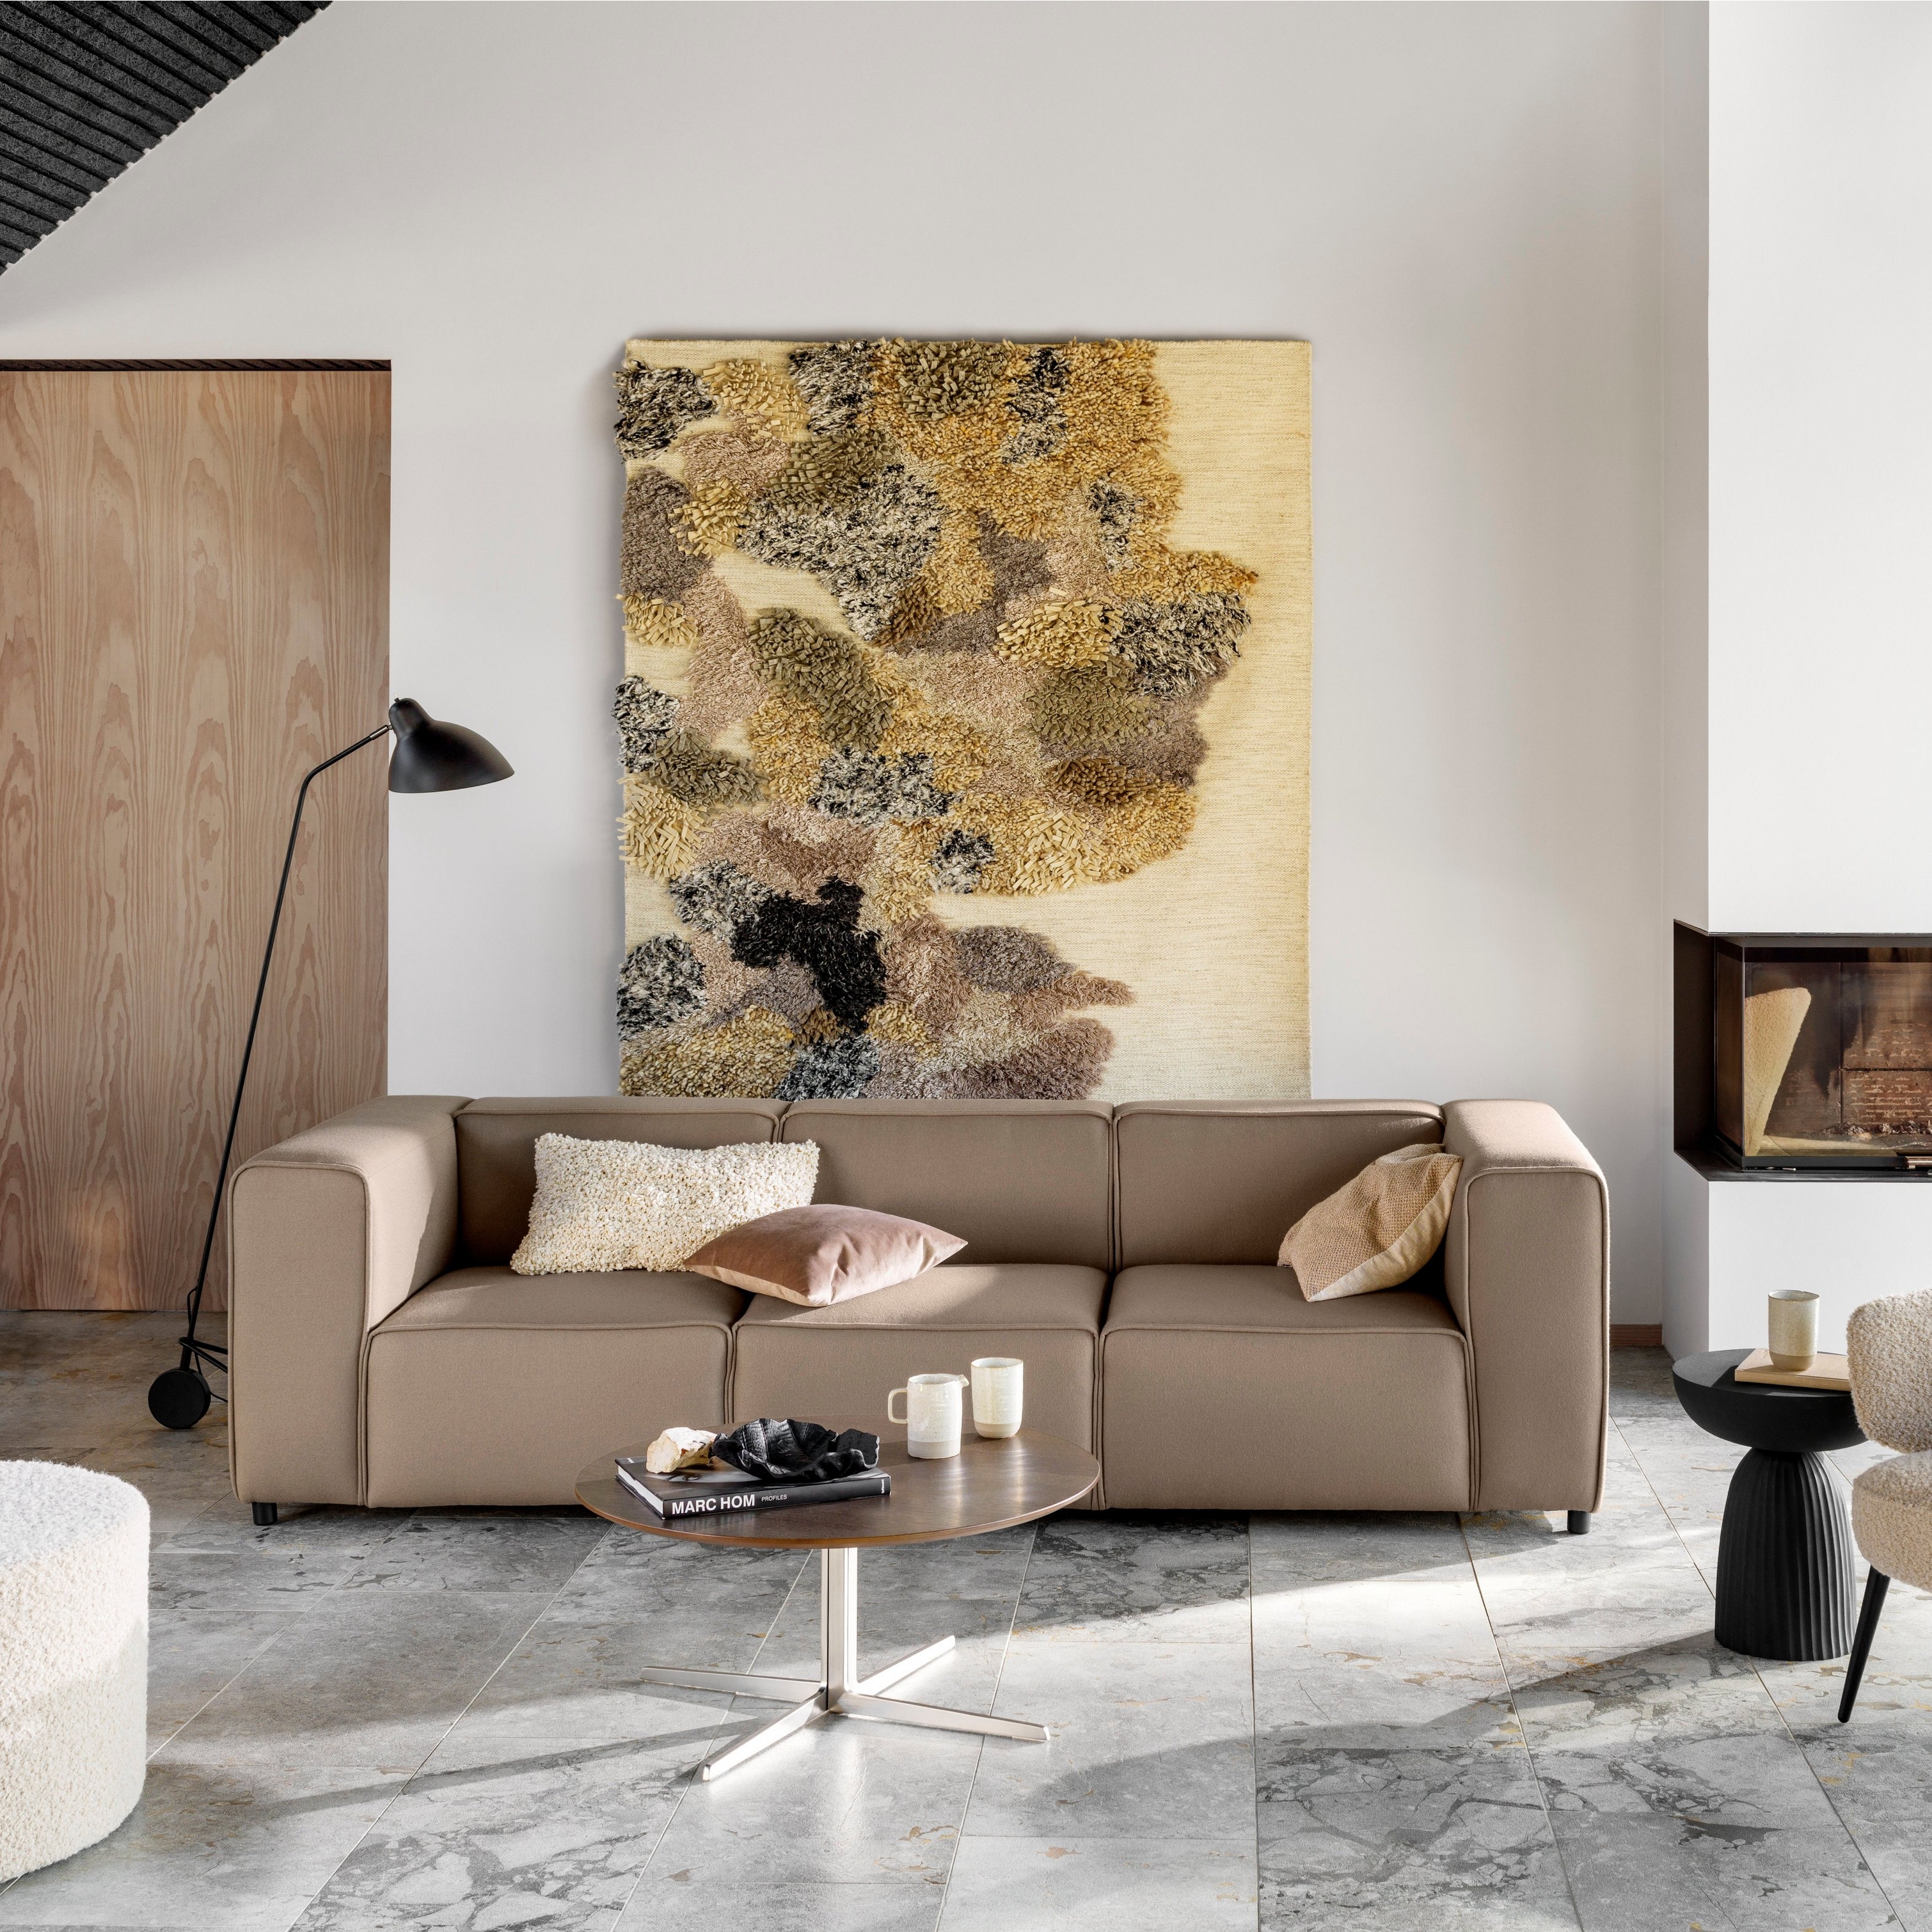 Sala con sofá, silla, arte, chimenea, lámpara de piso y suelo de mármol.